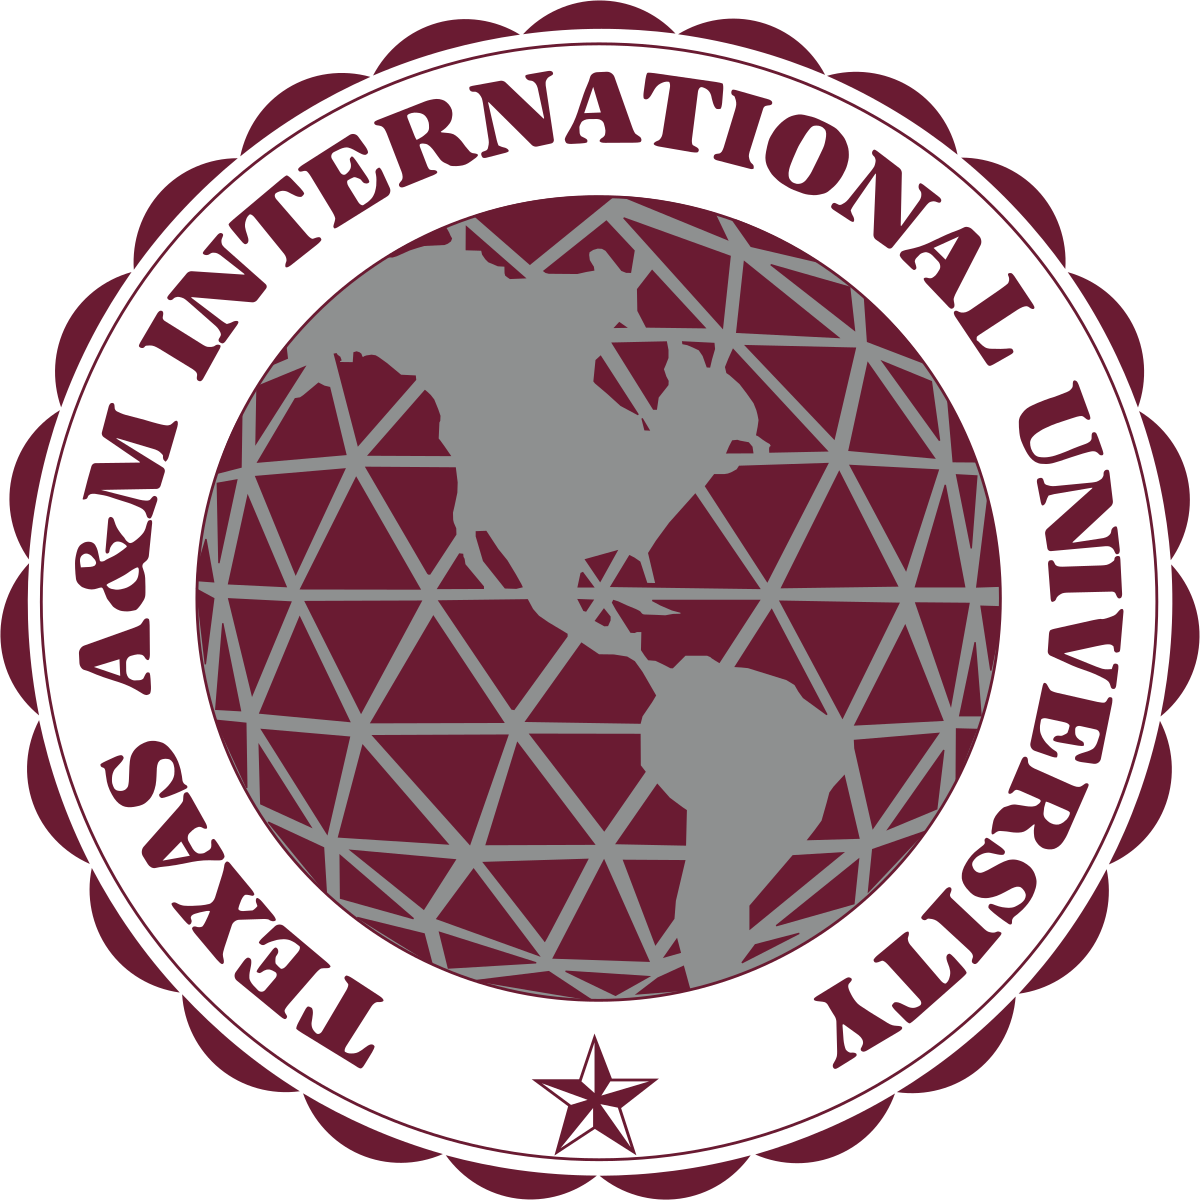 М интернейшнл. Техасский университет a&m. Международные университет логотип. М International. Texas a&m University logo.